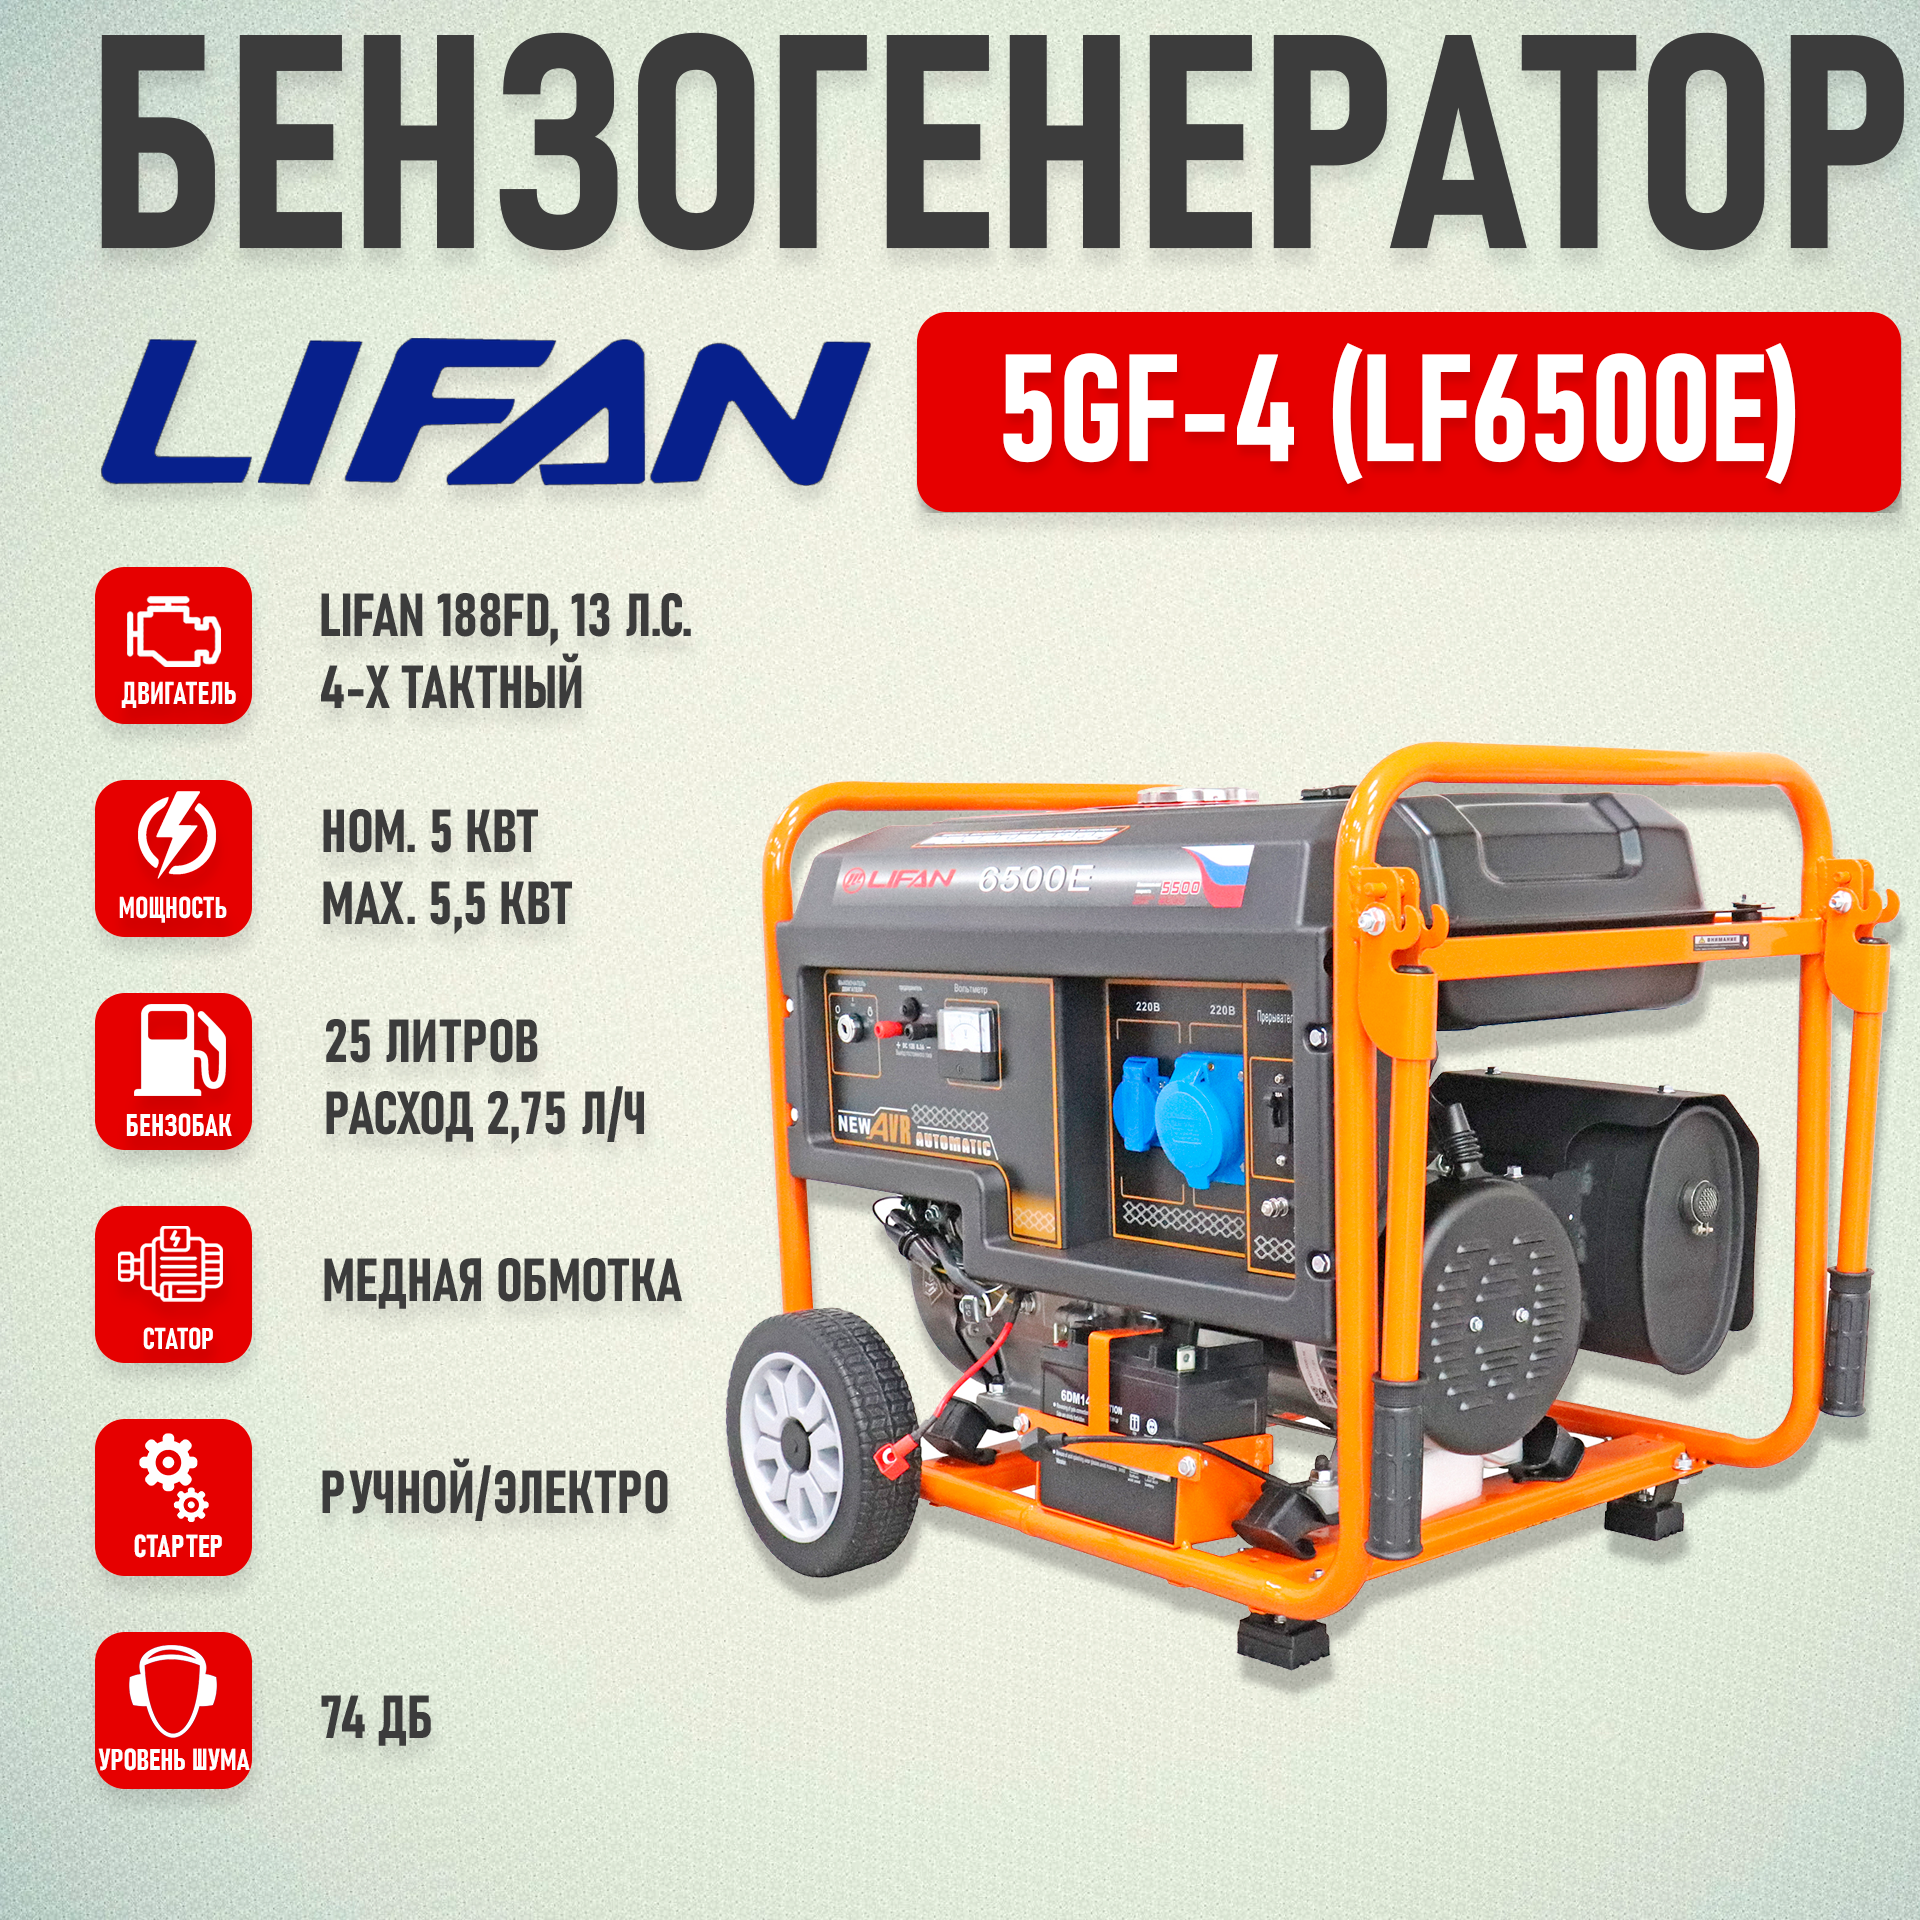 Генератор бензиновый Lifan 5 GF-4 (LF6500E) (5.5кВт, 220В, 25л, одна фаза)